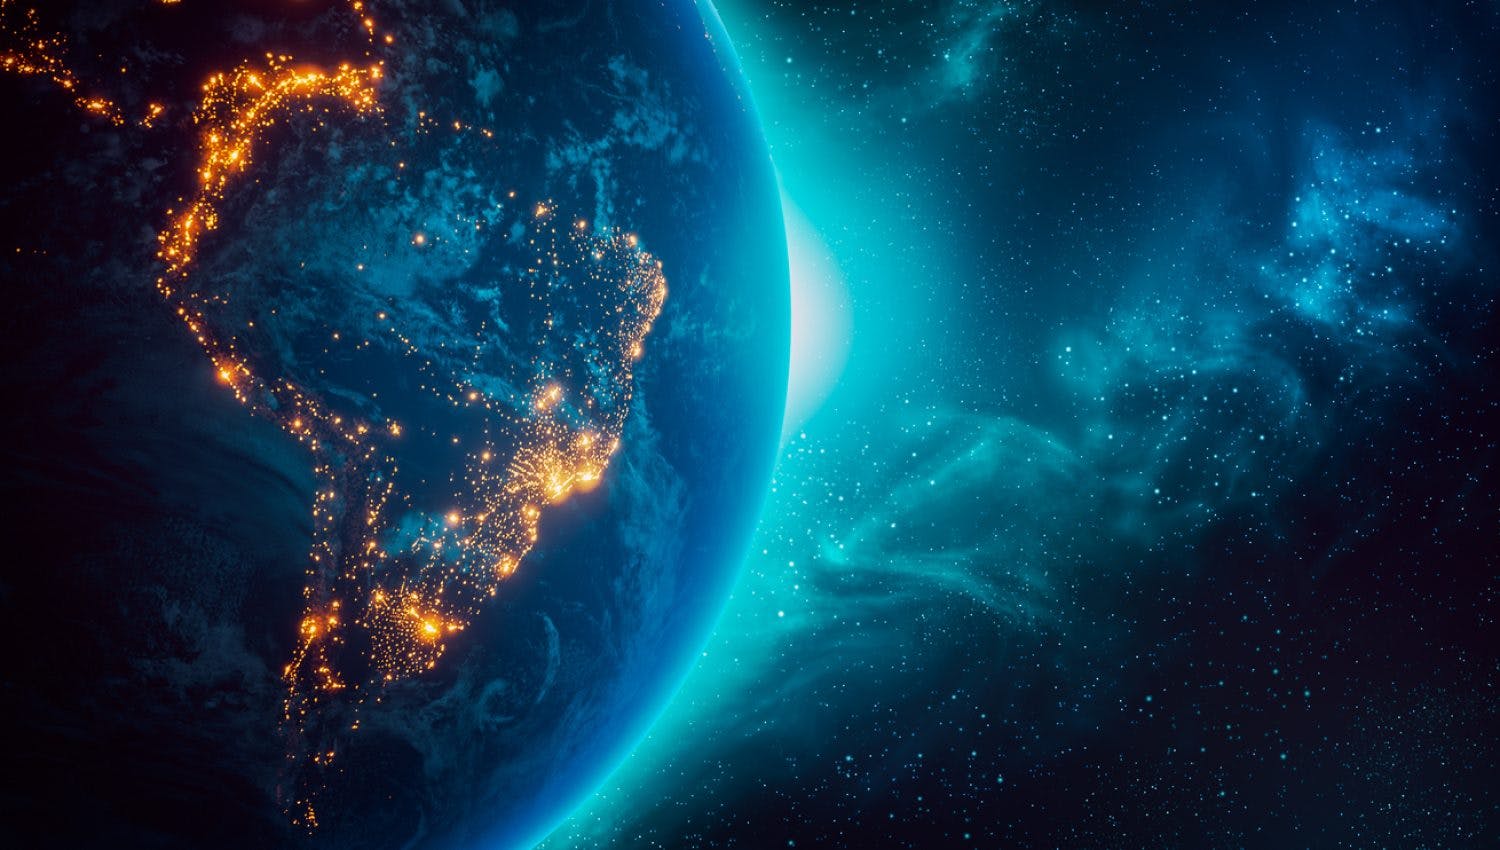 Image nocturne de l'Amérique du Sud éclairée, illustrant la connectivité du continent.